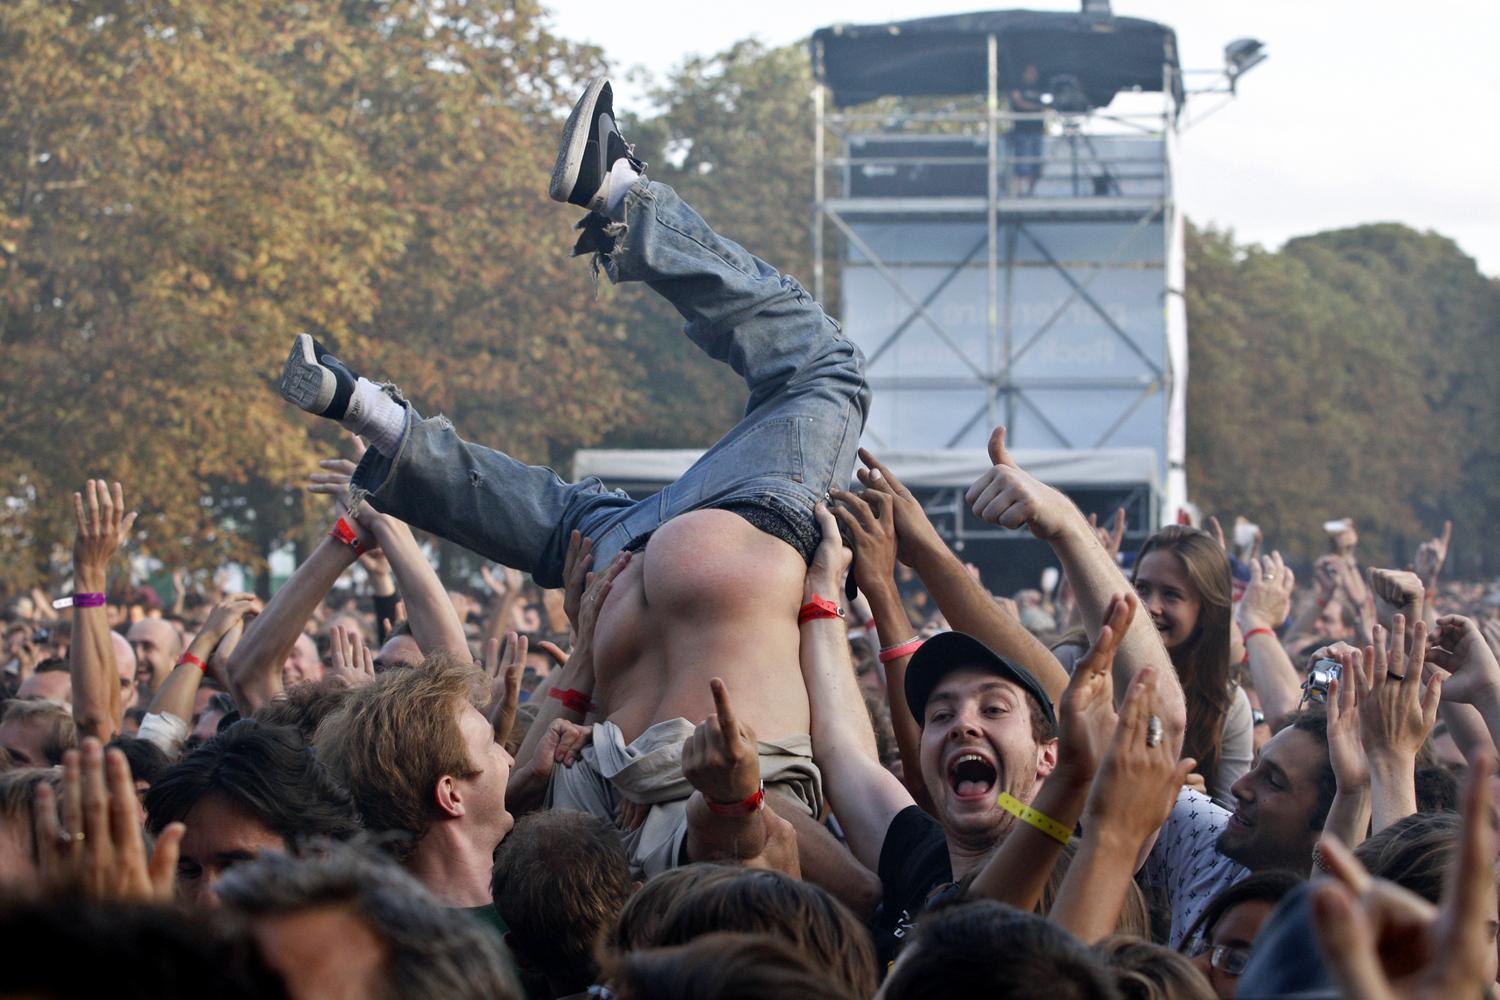 A Madnessre buliznak egy Párizs-közeli fesztiválon - hasonló őrületre várnak sokan a Szigeten